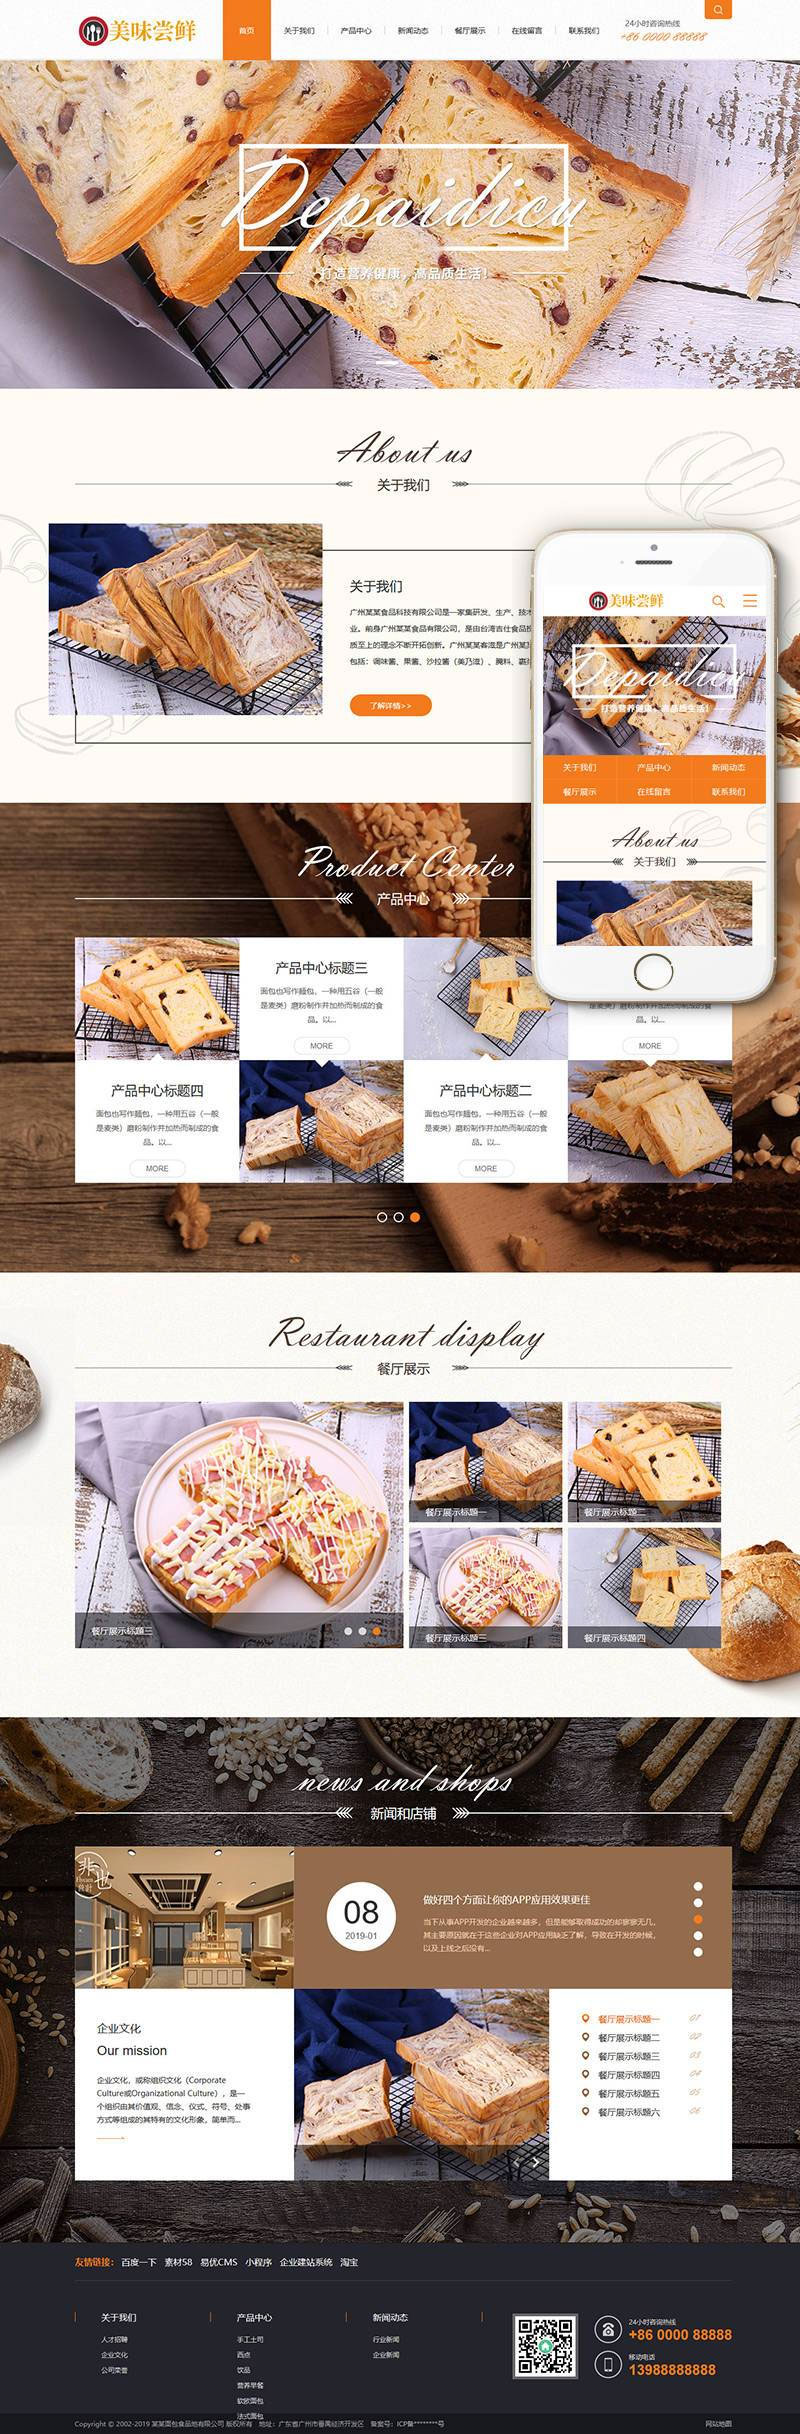 L213 织梦dedecms蛋糕面包食品公司网站模板(带手机移动端)